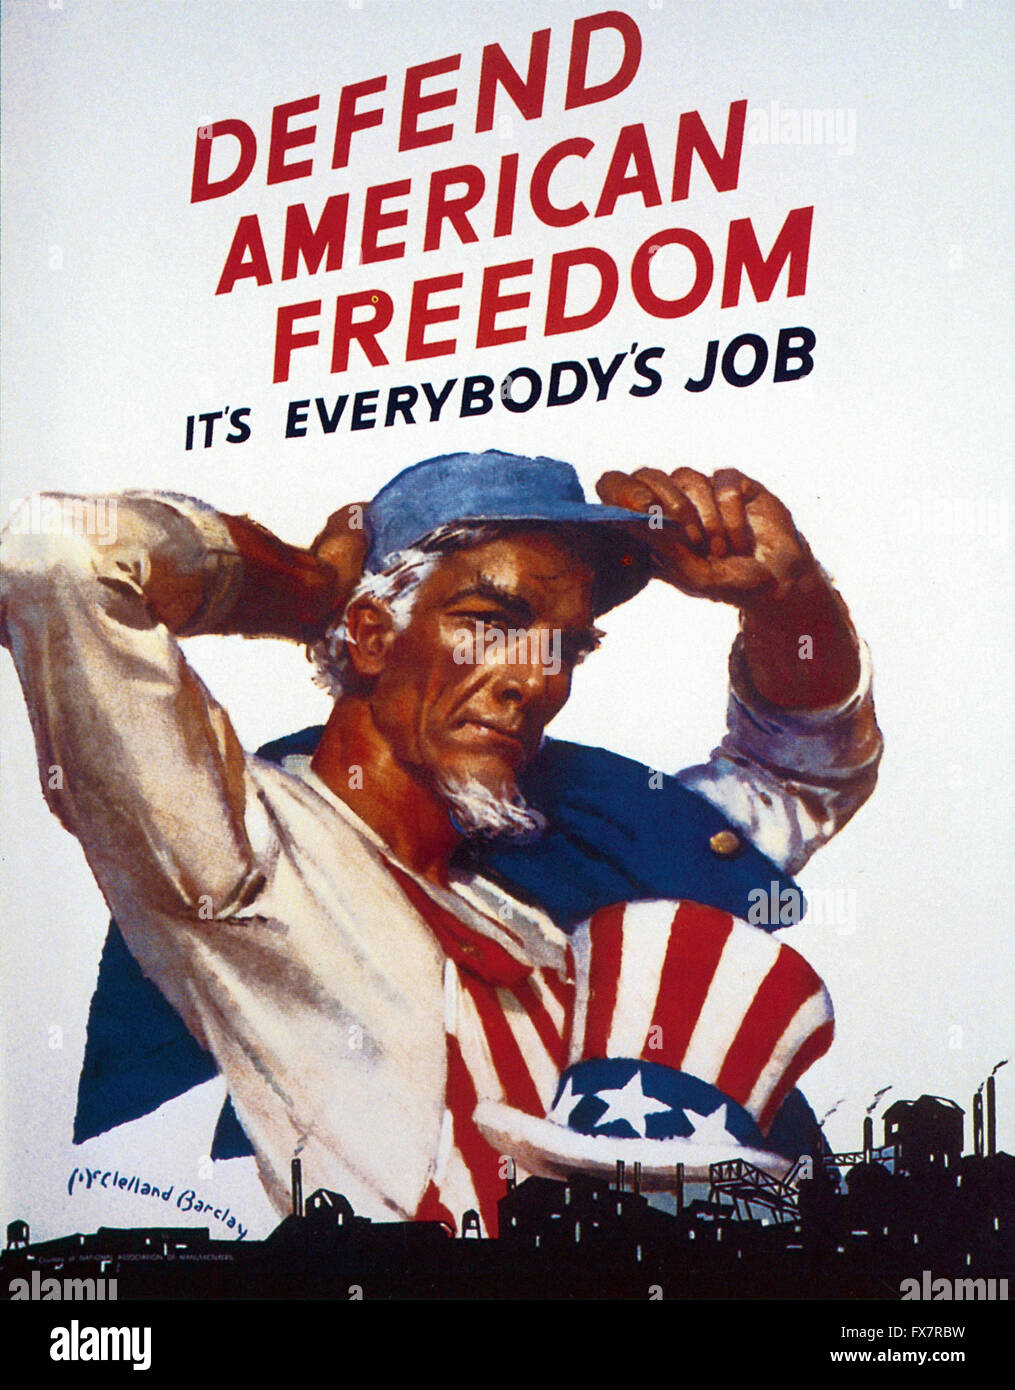 Difendere la libertà americana - lo zio Sam - II Guerra Mondiale - U.S poster di propaganda Foto Stock